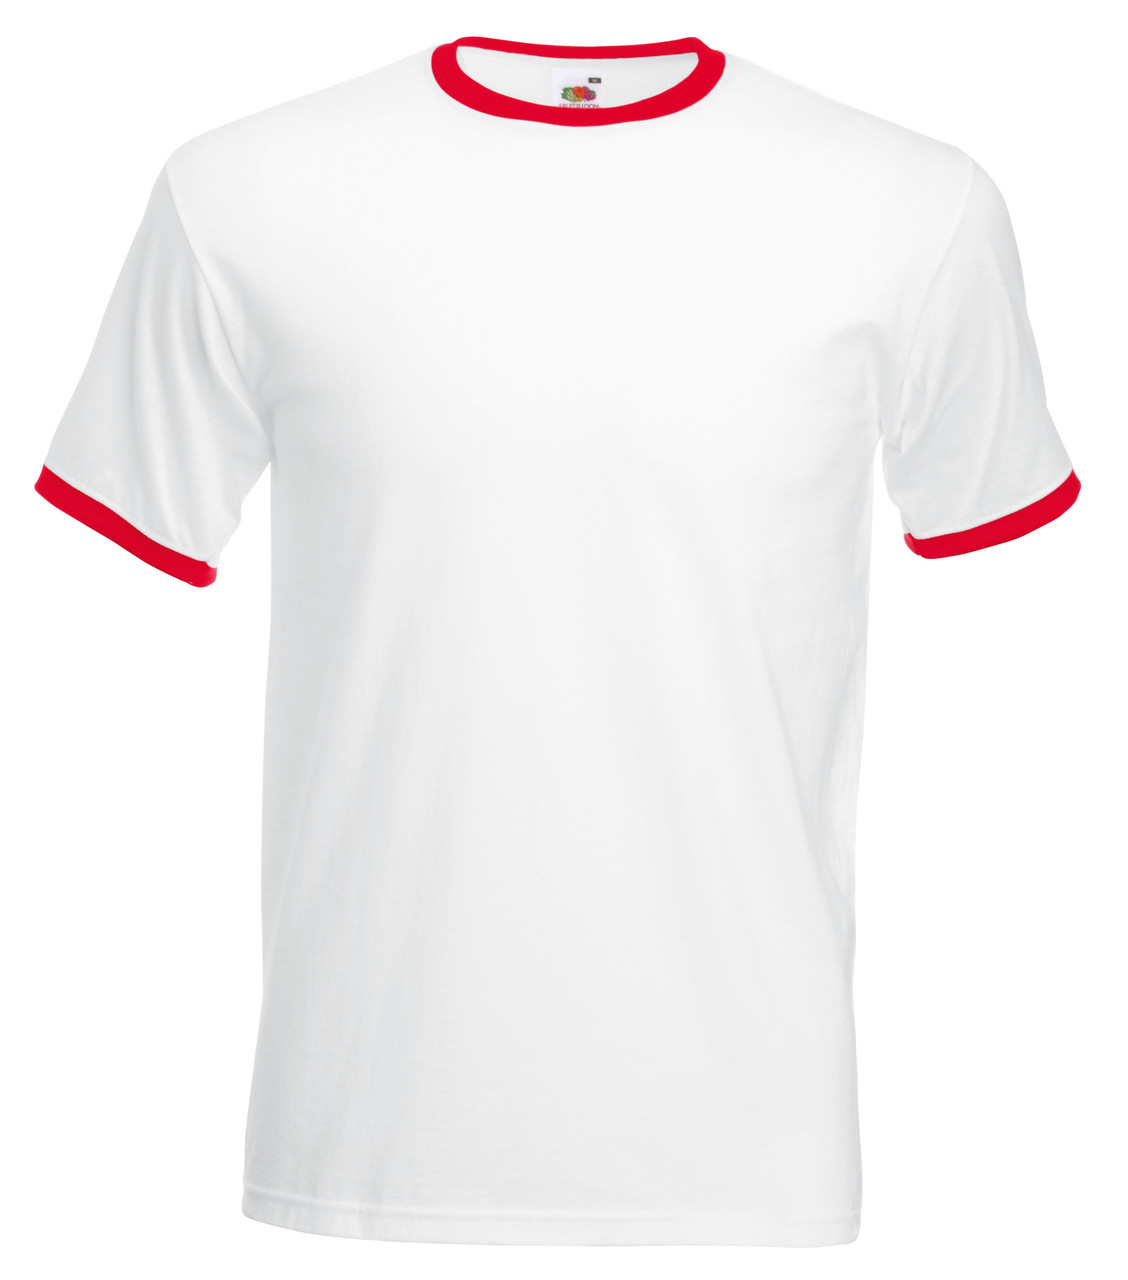 Чоловіча футболка з кольоровою окантовкою Fruit of the loom Білий/Червоний 61-168-Wm L